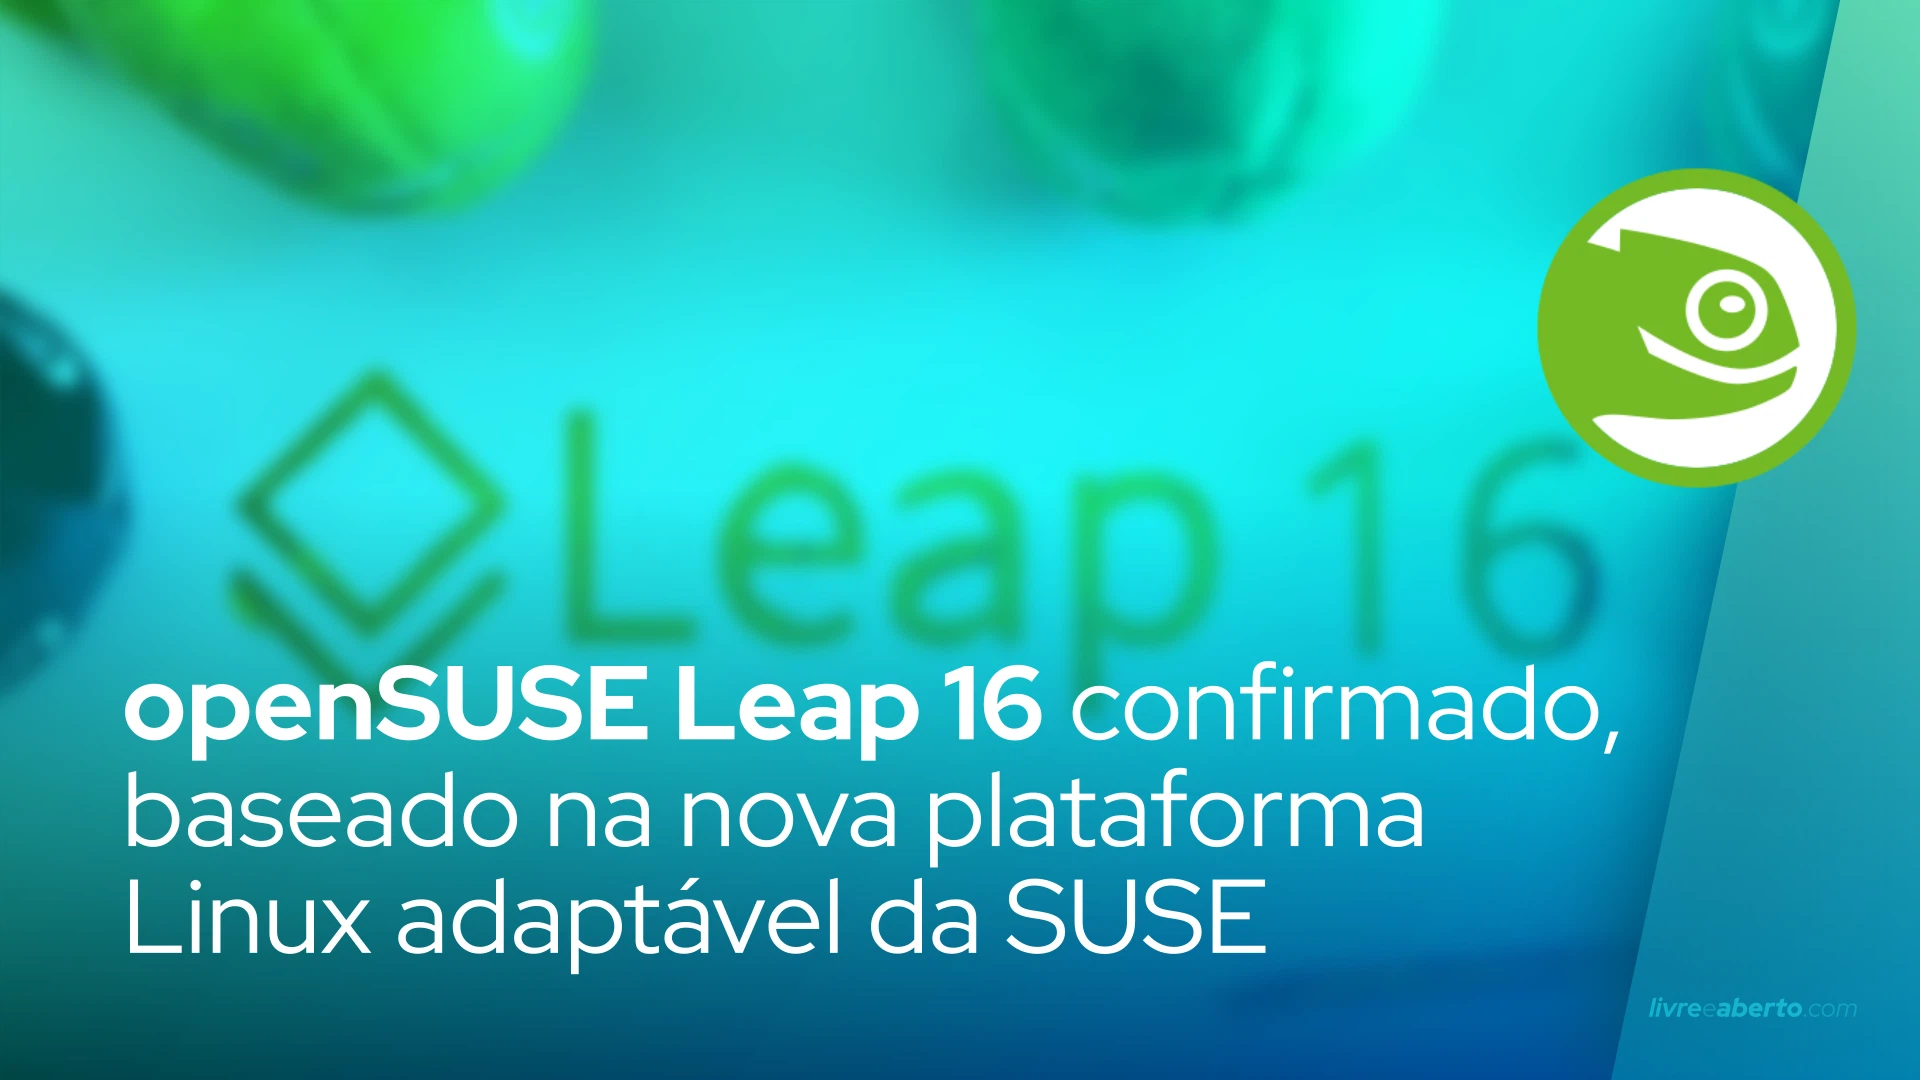 openSUSE Leap 16 confirmado, baseado na nova plataforma Linux adaptável da SUSE